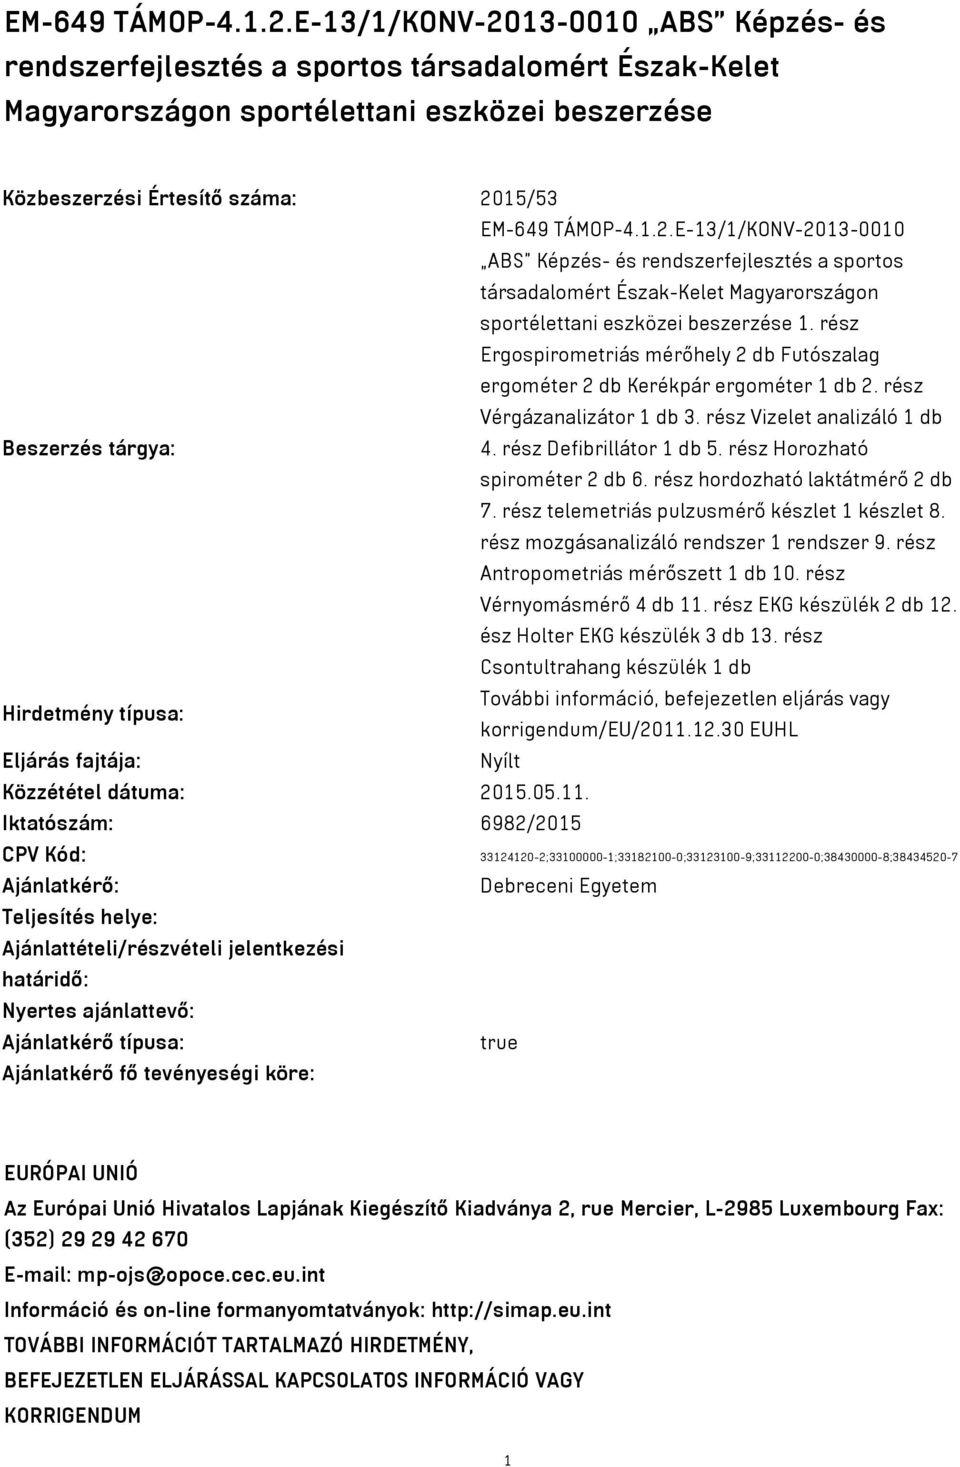 E-13/1/KONV-2013-0010 ABS Képzés- és rendszerfejlesztés a sportos társadalomért Észak-Kelet Magyarországon sportélettani eszközei beszerzése 1.